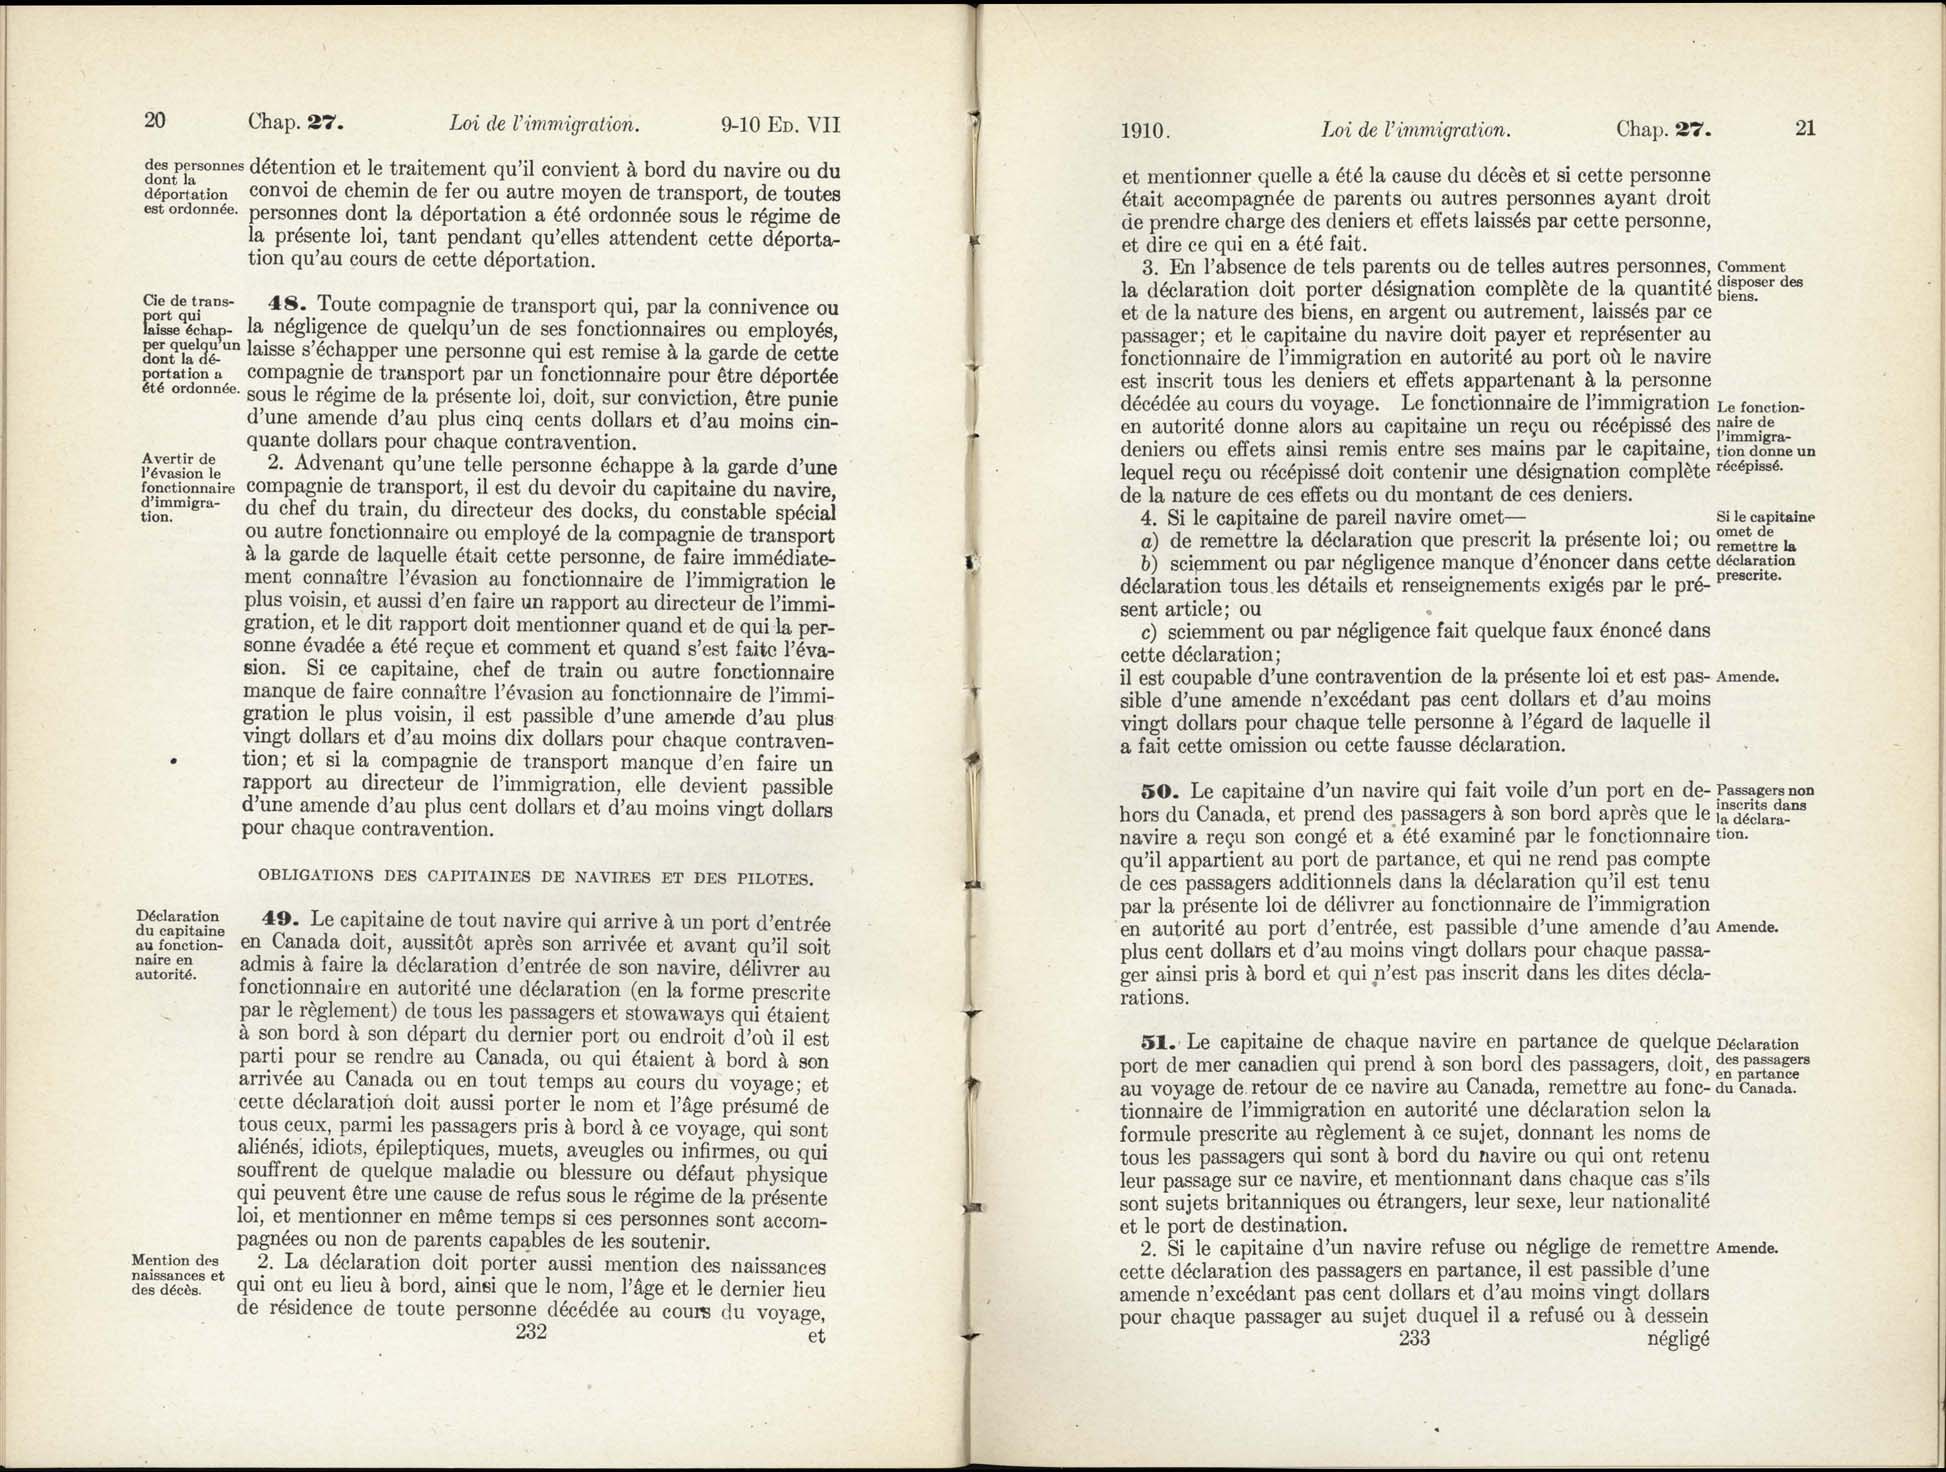 Chap 27 Page 232, 233 L’Acte d’immigration, 1910